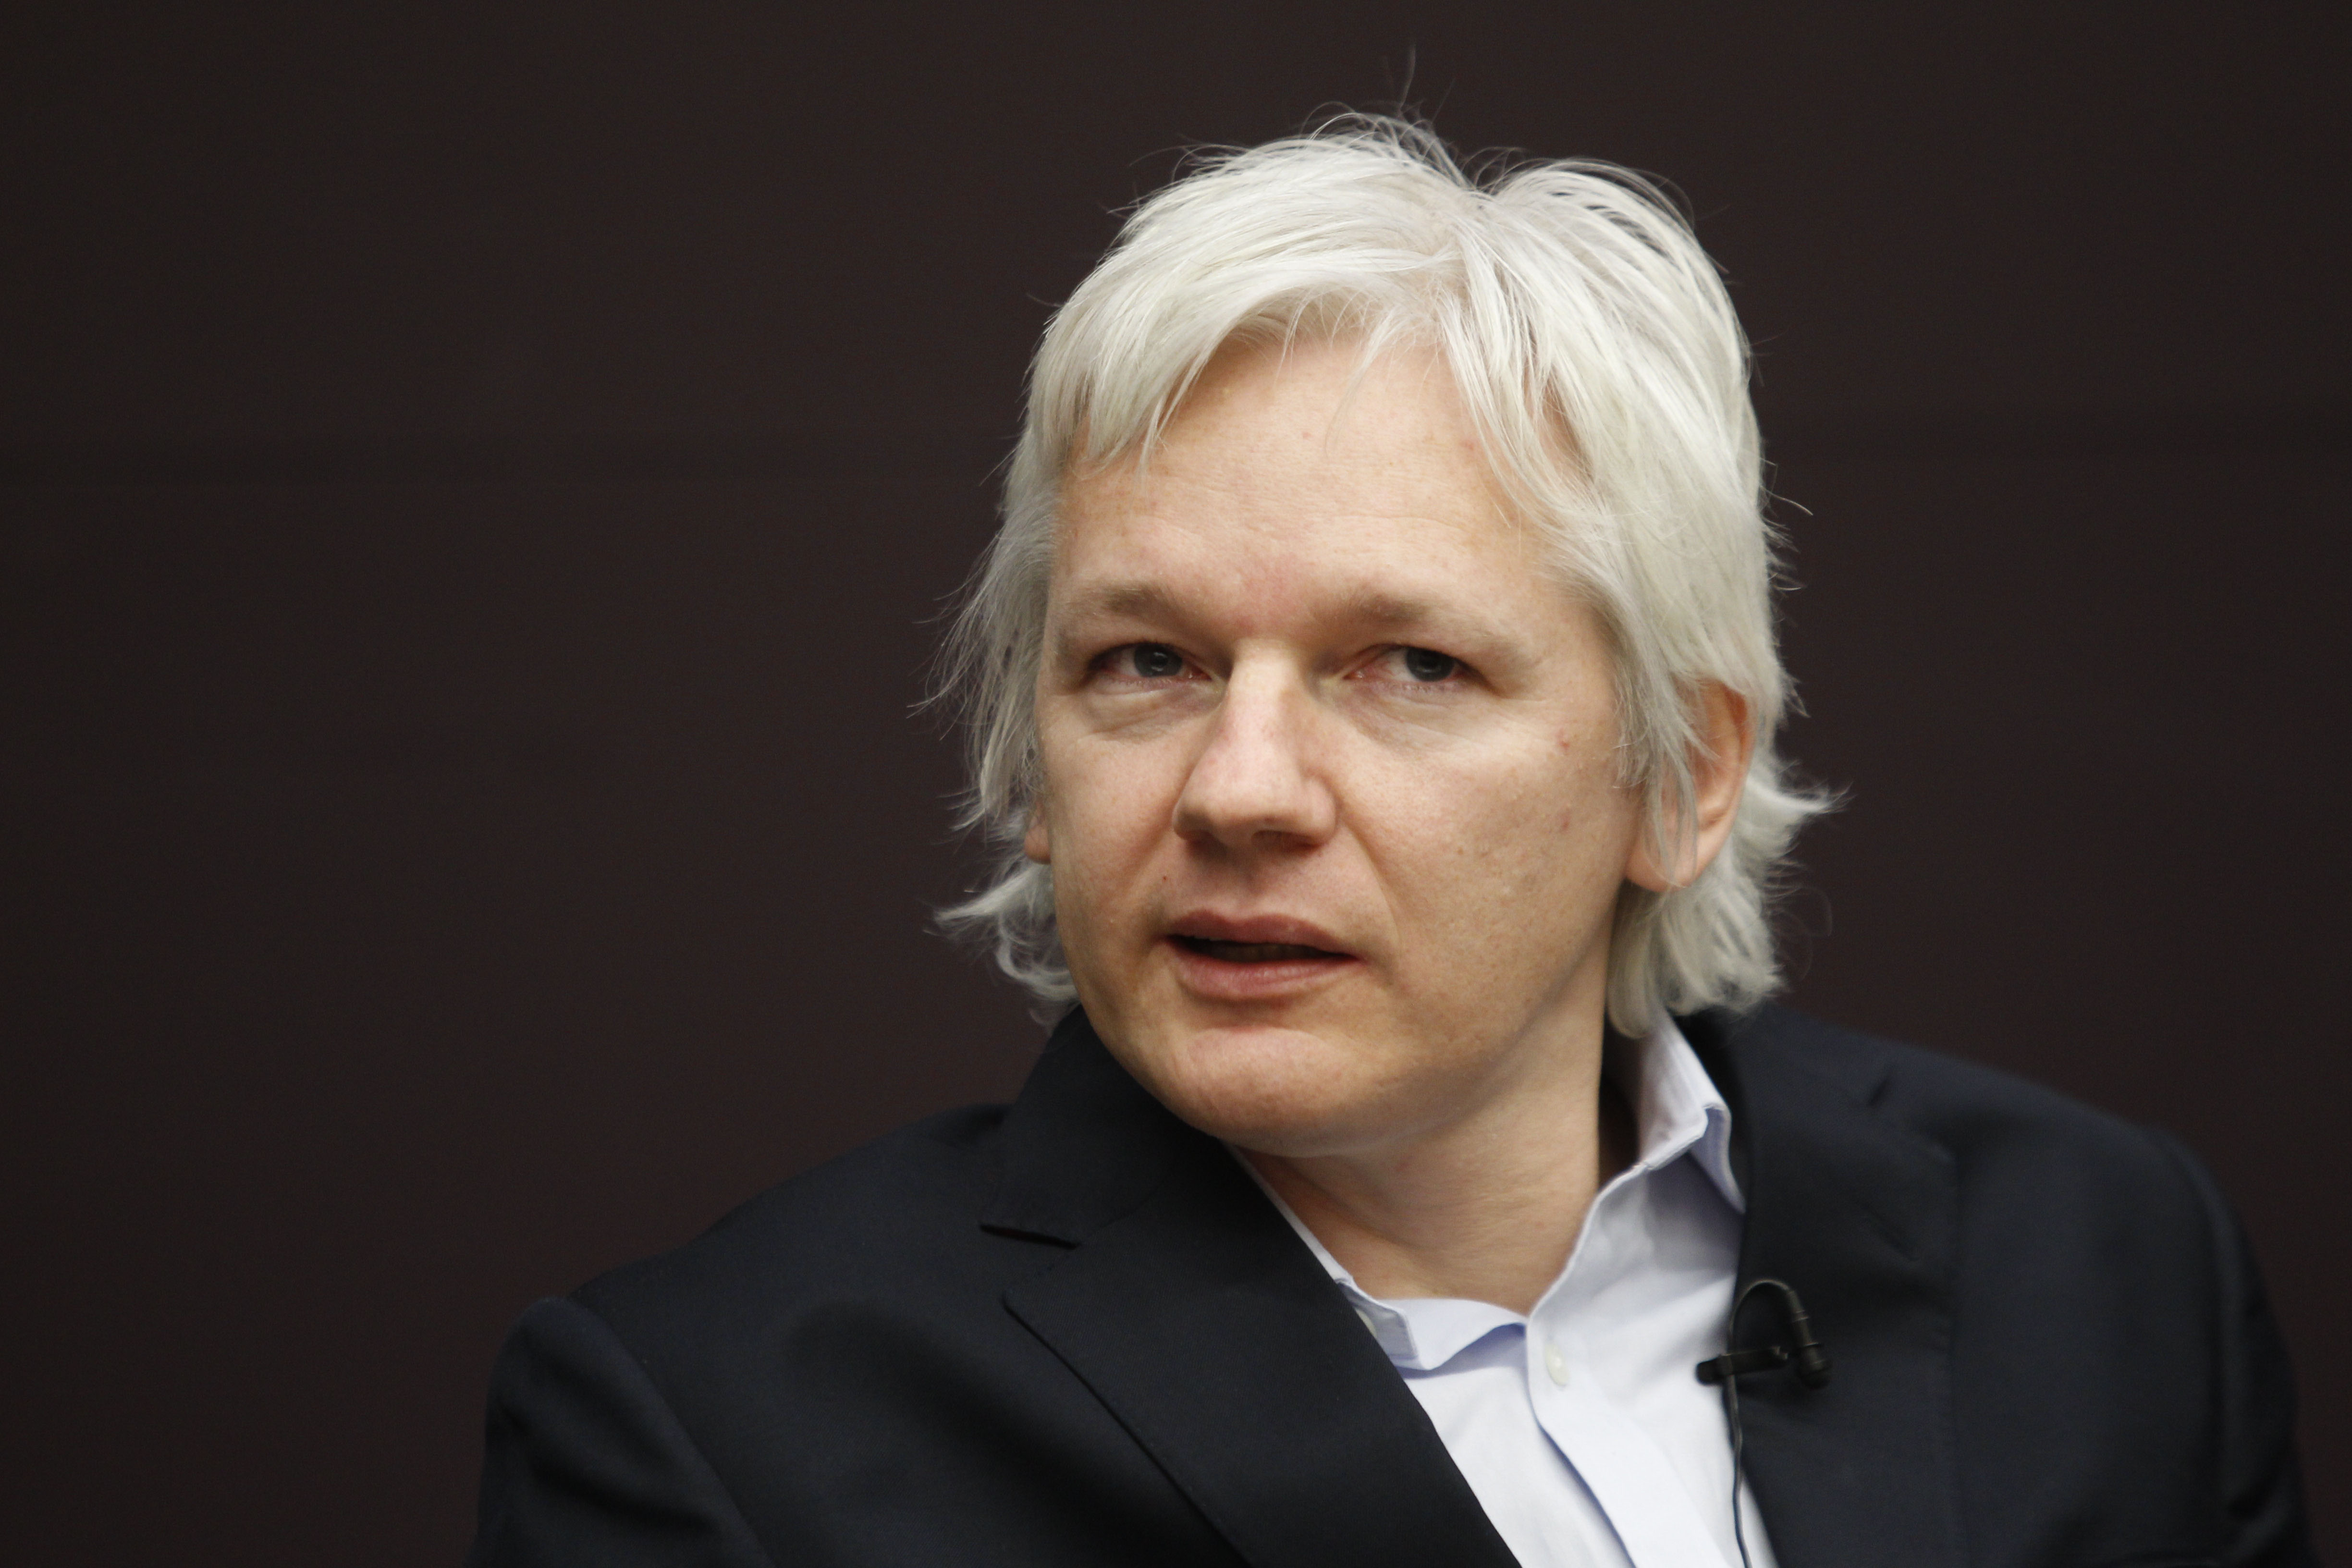 Julian Assange, Sverige, Teve, Russia Today, Wikileaks